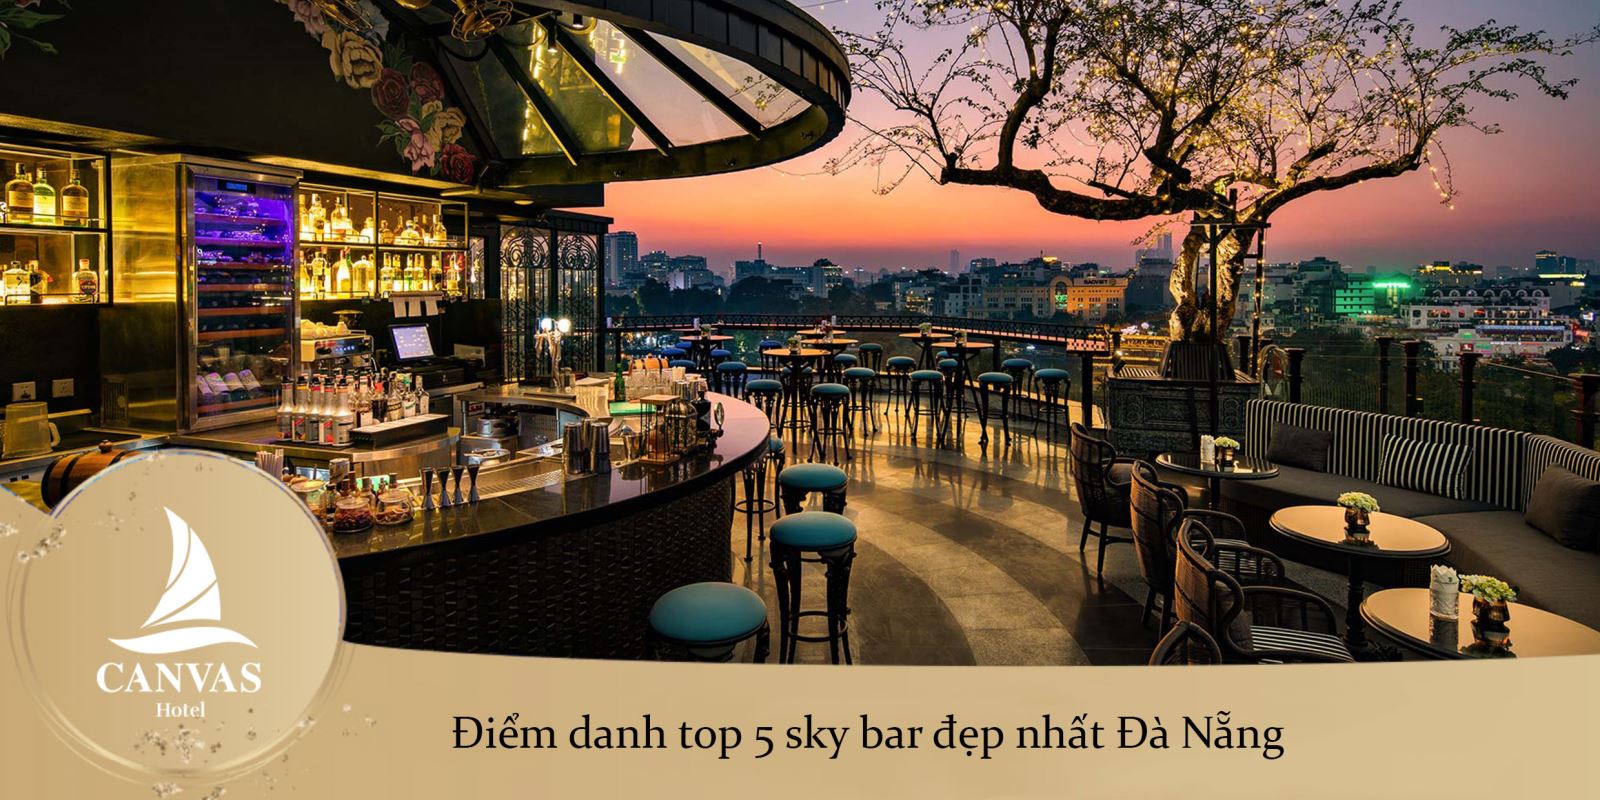 Điểm danh top 5 sky bar đẹp nhất Đà Nẵng